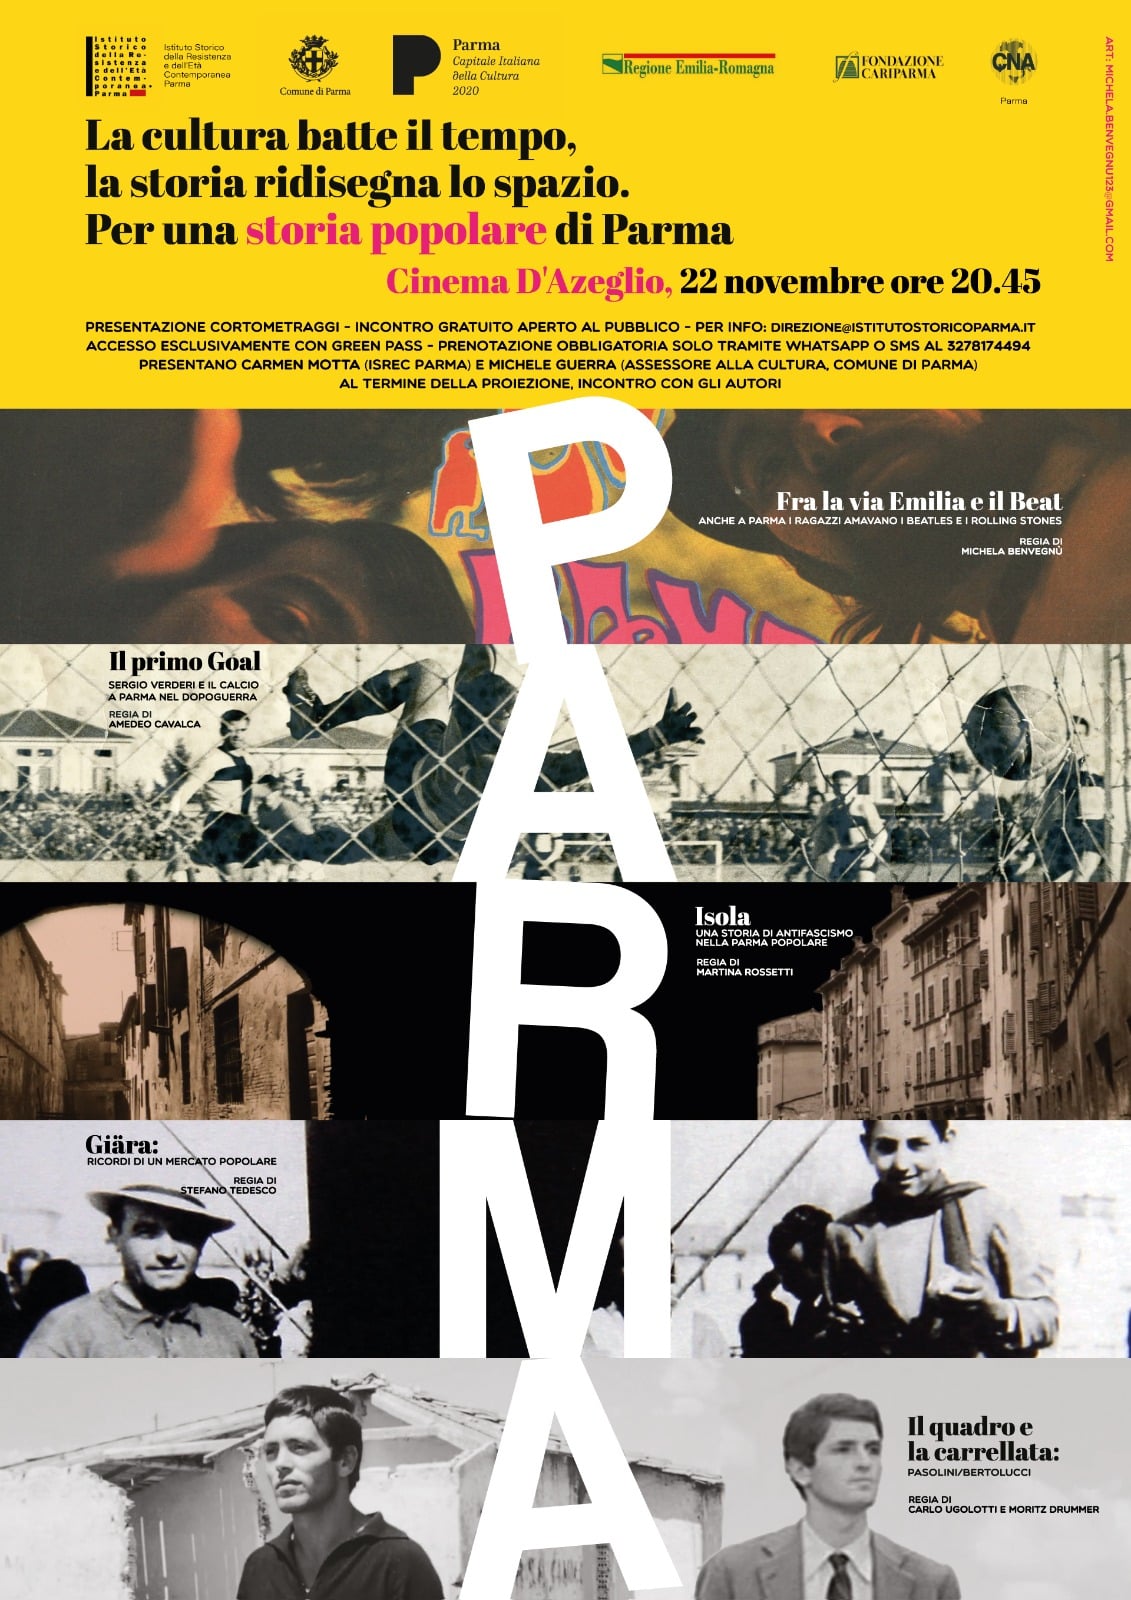 Fig. 1. Locandina della prima proiezione di “Per una storia popolare di Parma”, tenuta al cinema D’Azeglio il 22 novembre 2021.